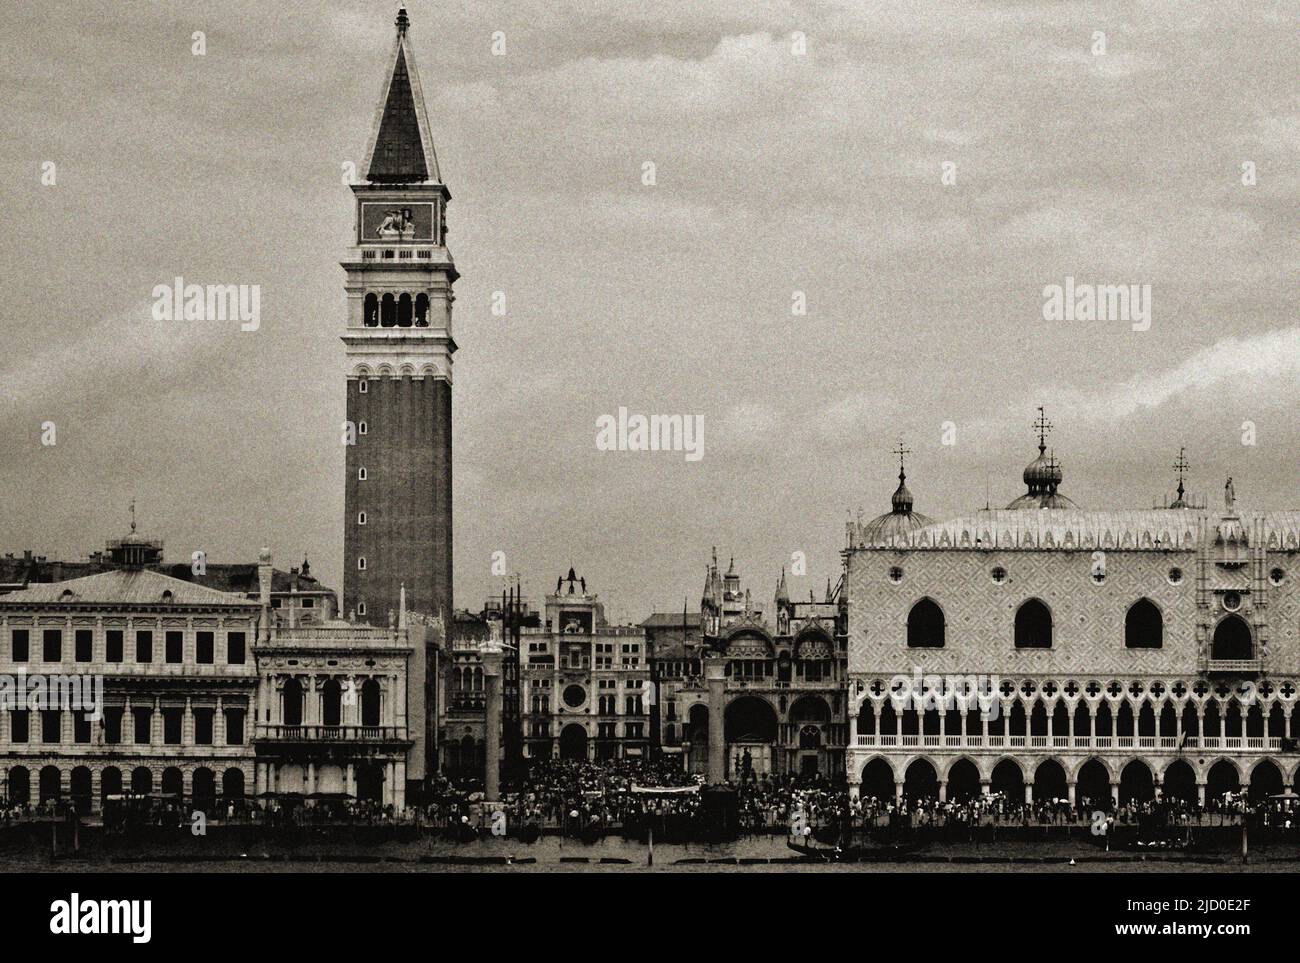 Una fotografía en blanco y negro de la Piazza San Marco y el Palacio Ducal de Venecia, Italia. Foto de stock